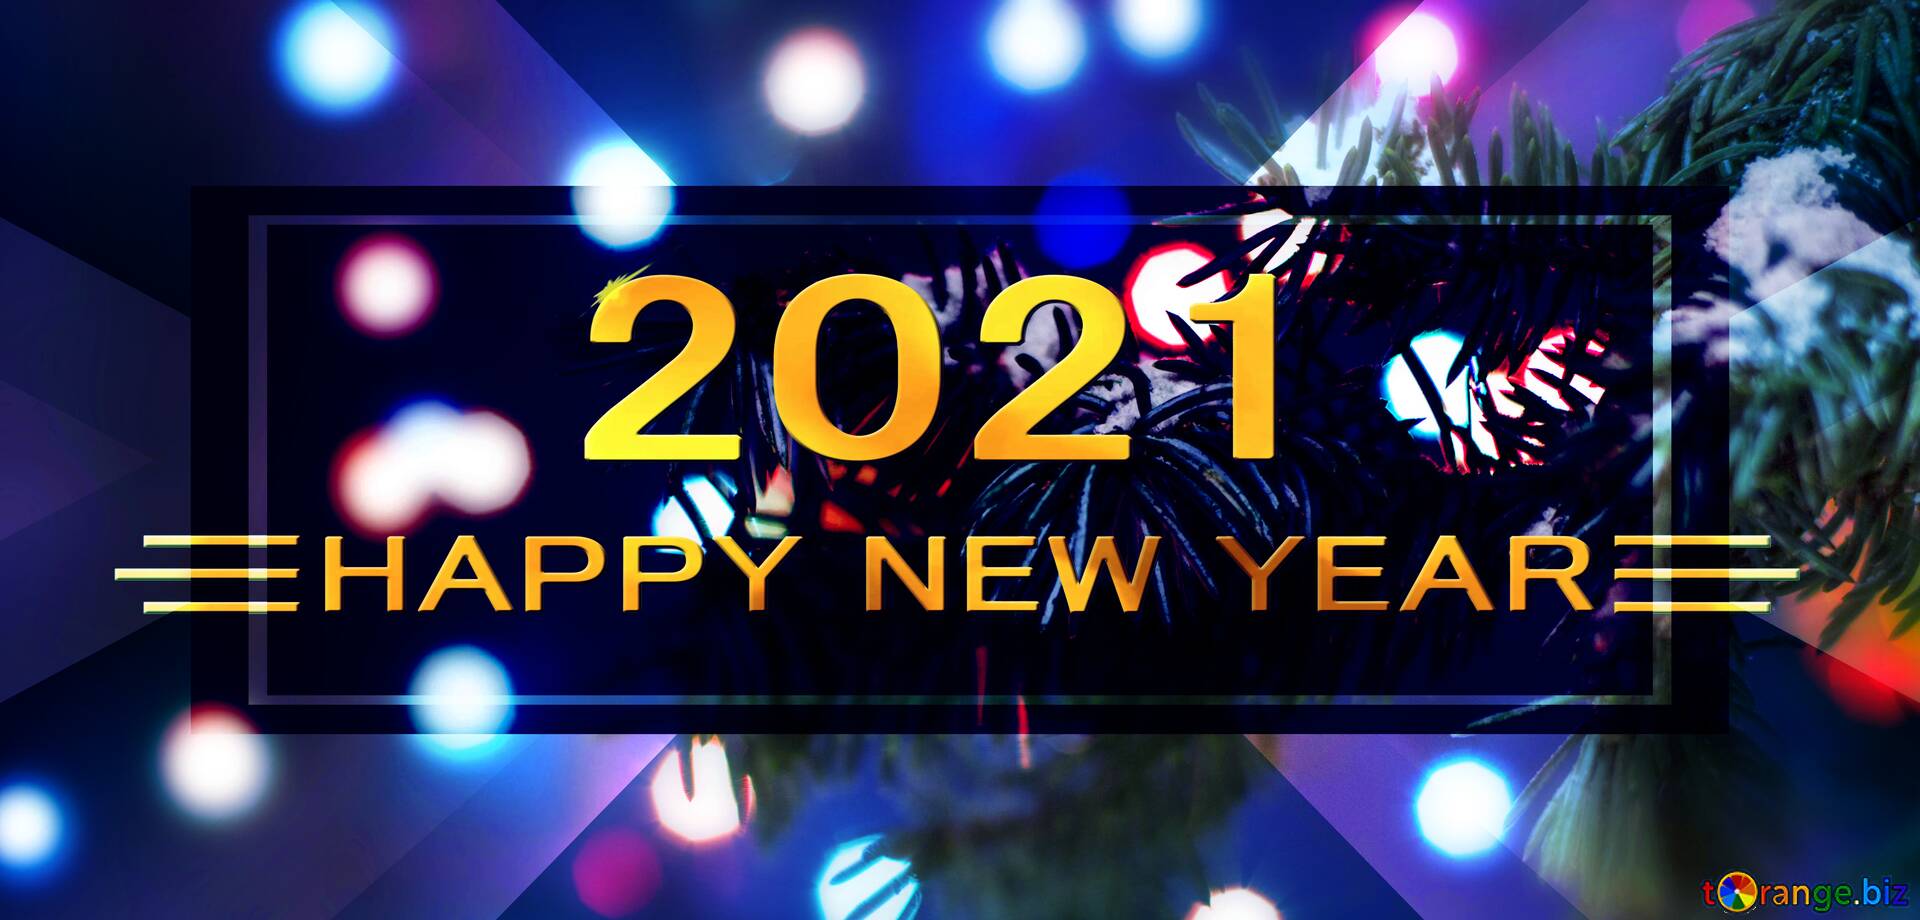 Chào đón năm mới với đầy hy vọng và niềm tin! Project Corner sẽ giúp bạn khởi đầu một mùa lễ hội đầy tươi vui bằng những mẫu nền đẹp và đầy ý nghĩa. Hãy để màn hình của bạn trở thành bức tranh tuyệt đẹp với hình ảnh của năm 2020 và hình ảnh rực rỡ của một năm mới tươi đẹp.